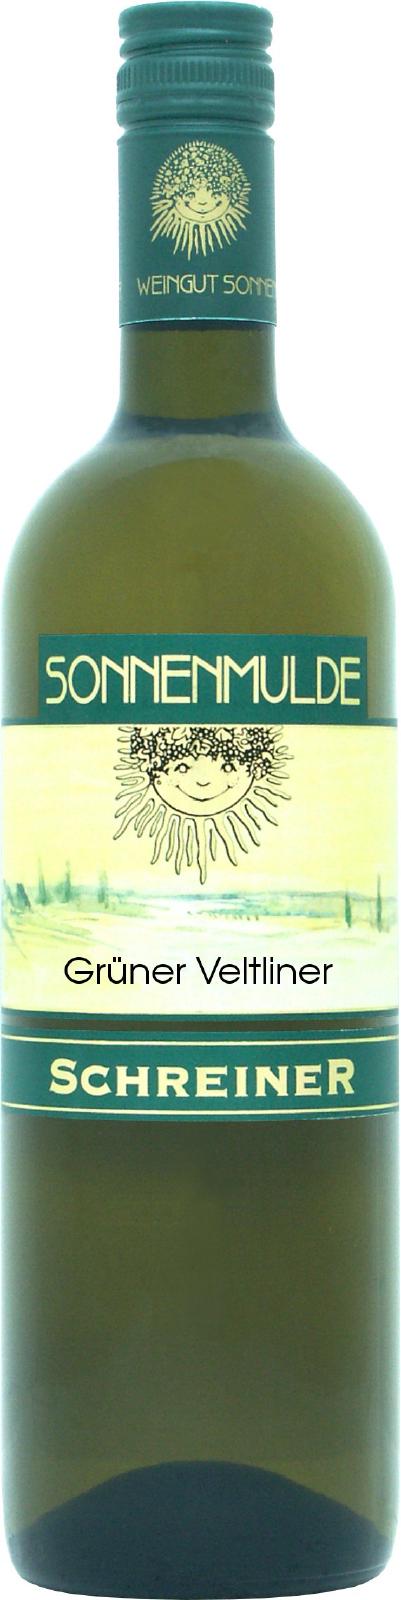 A bottle of Grüner Veltliner